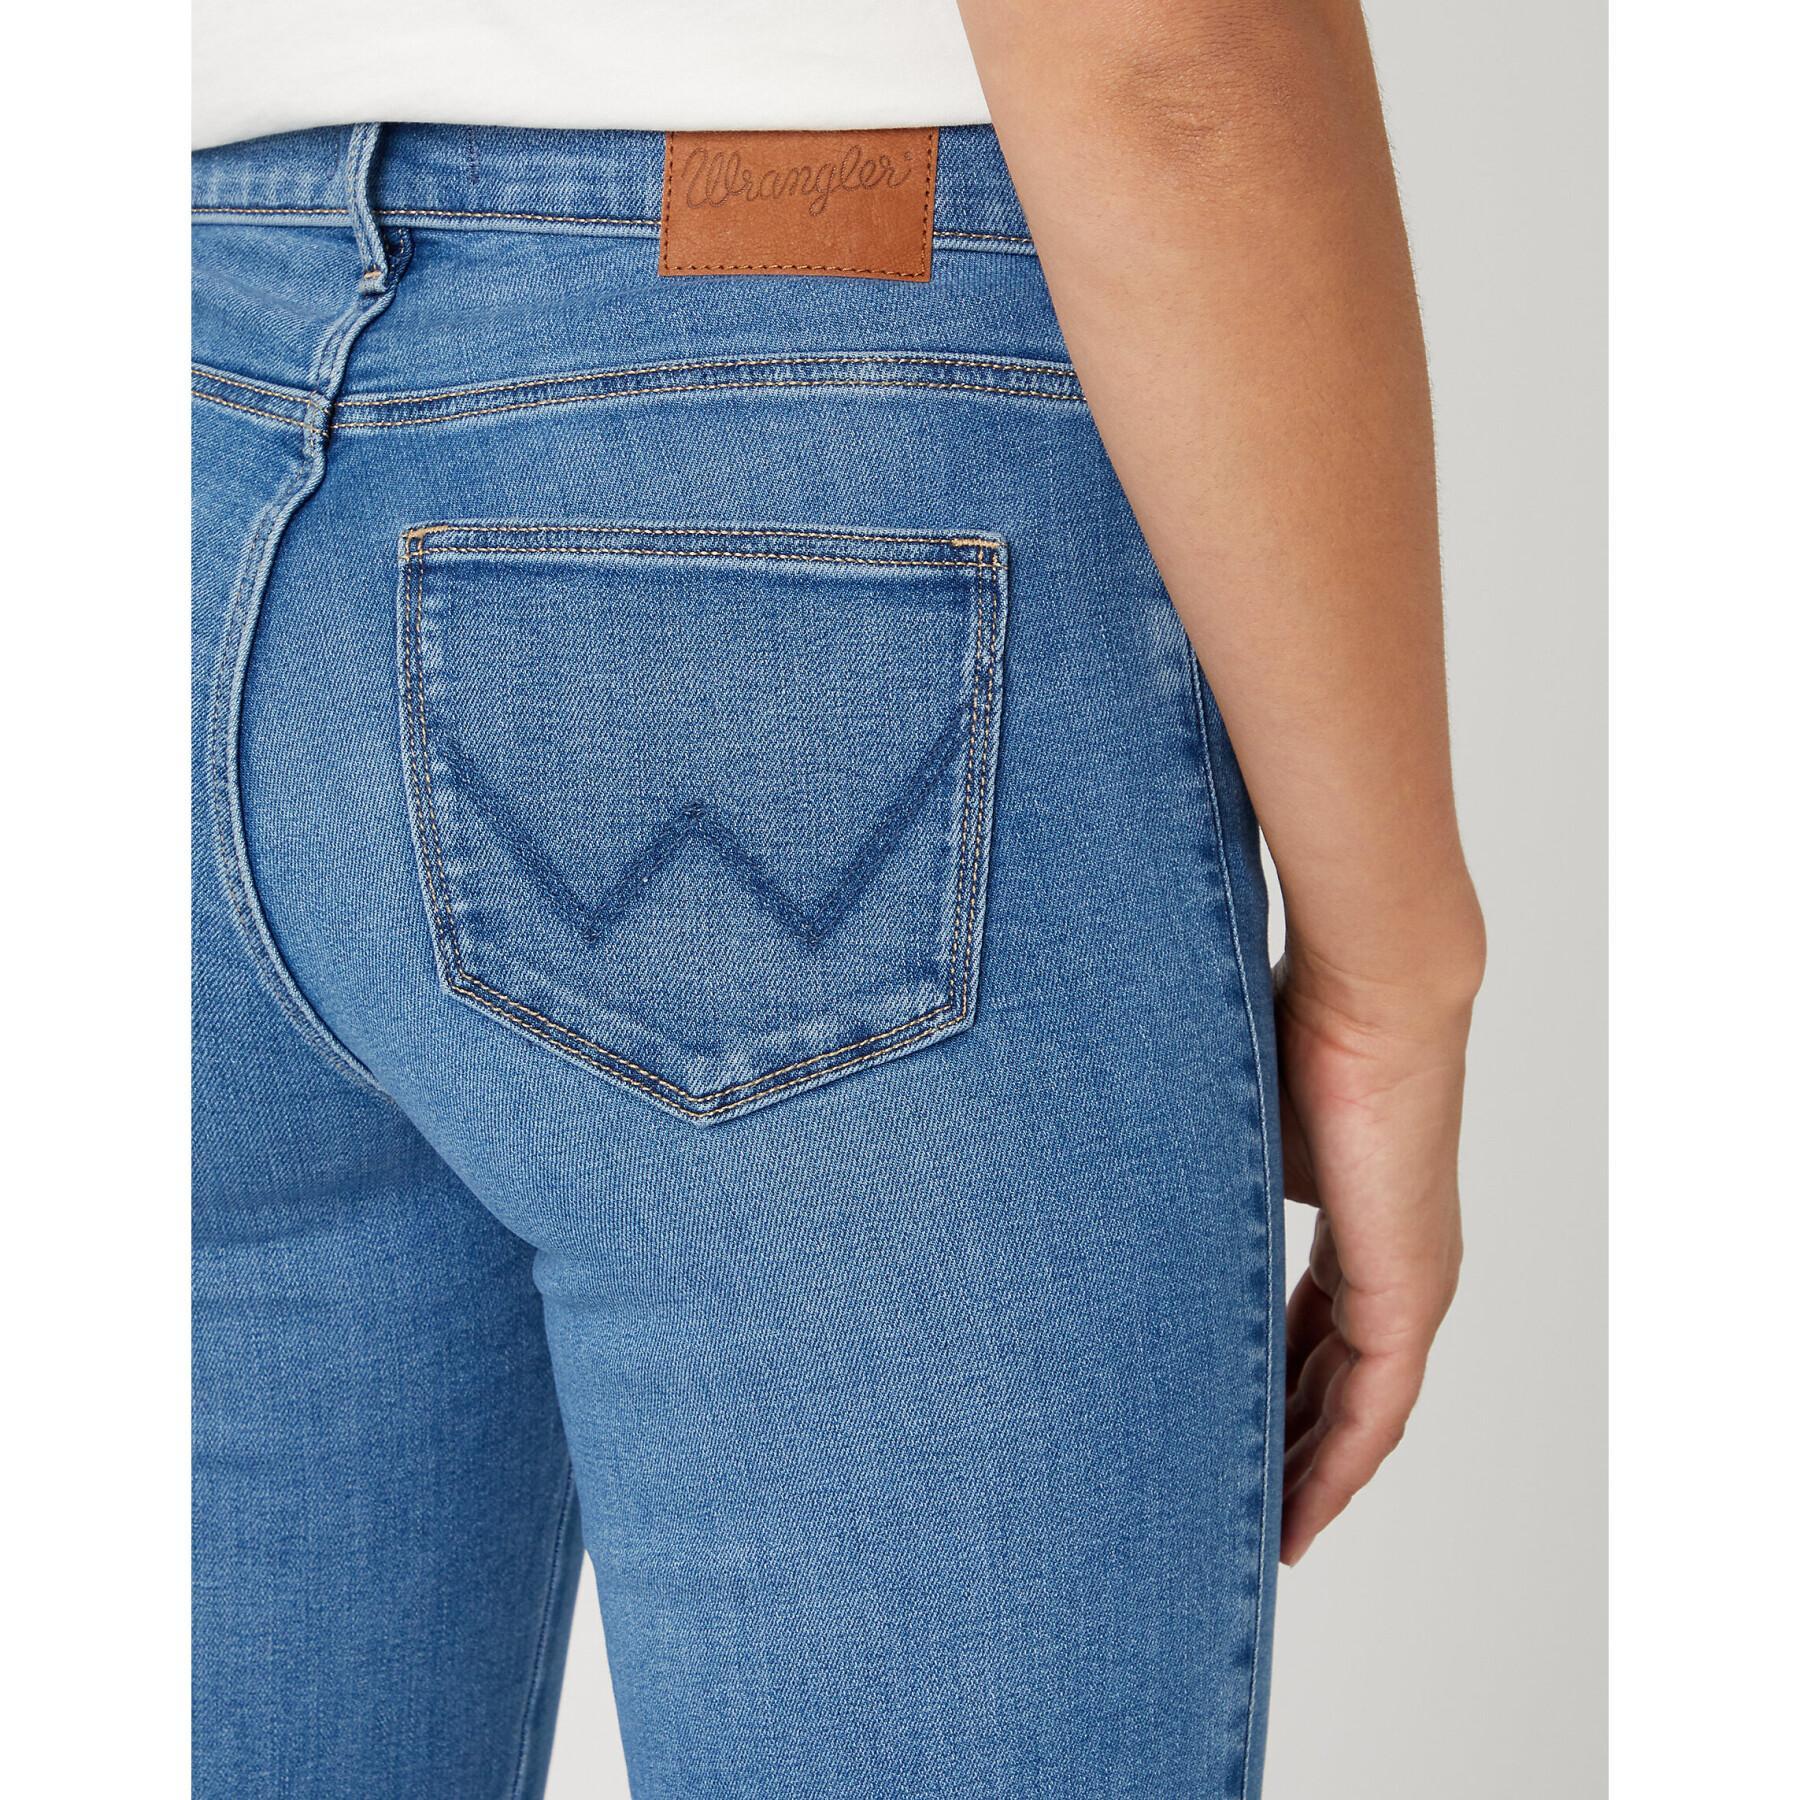 Jeans mulher Wrangler Straight